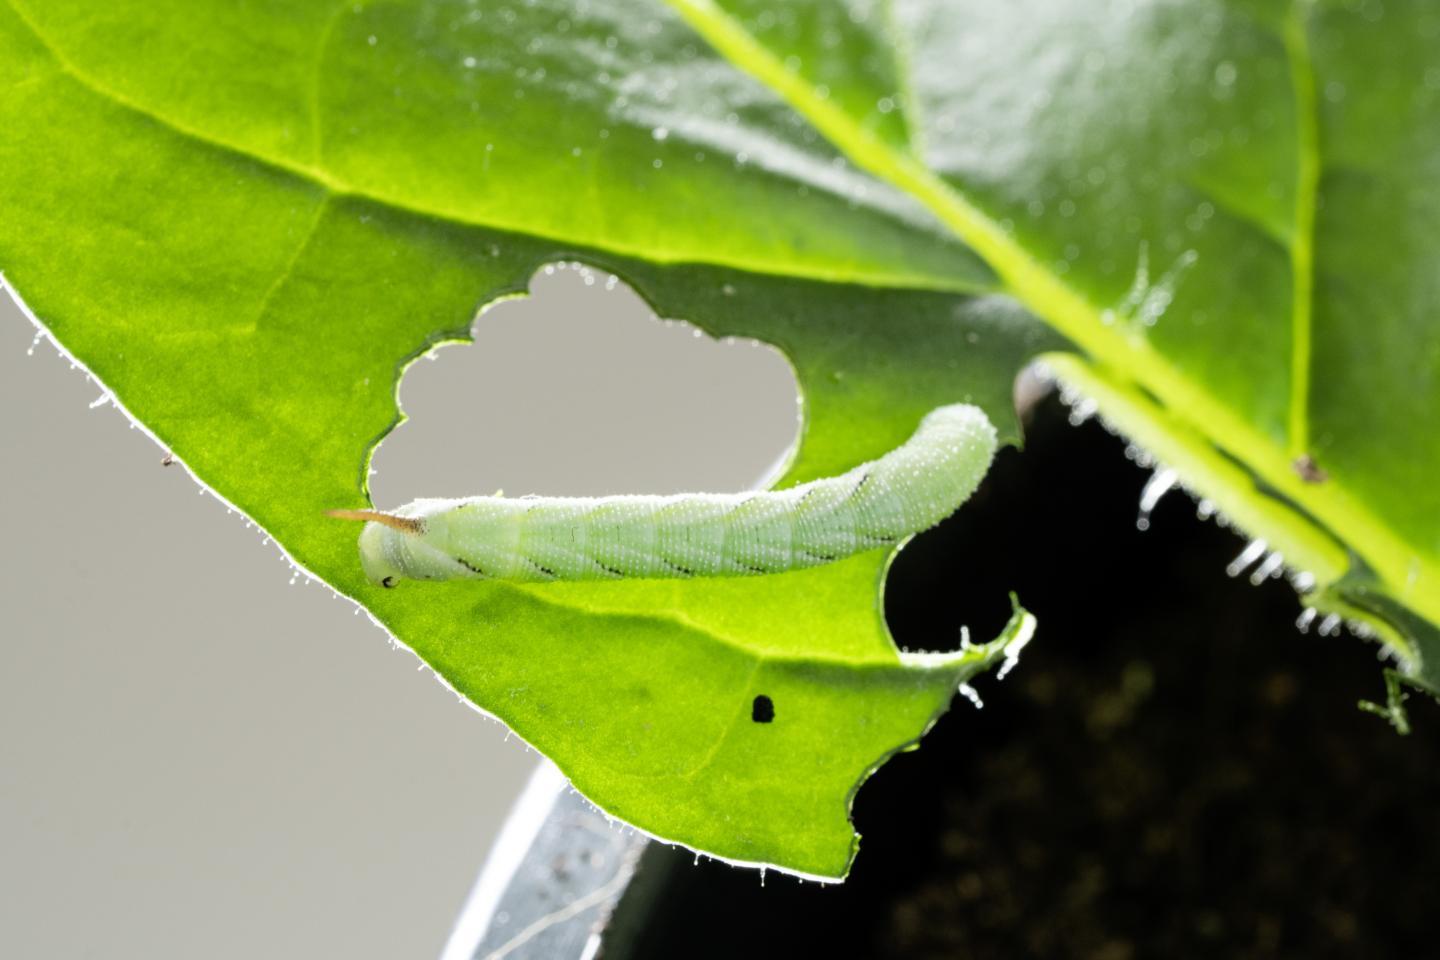 Manduca sexta on a wild tobacco leaf